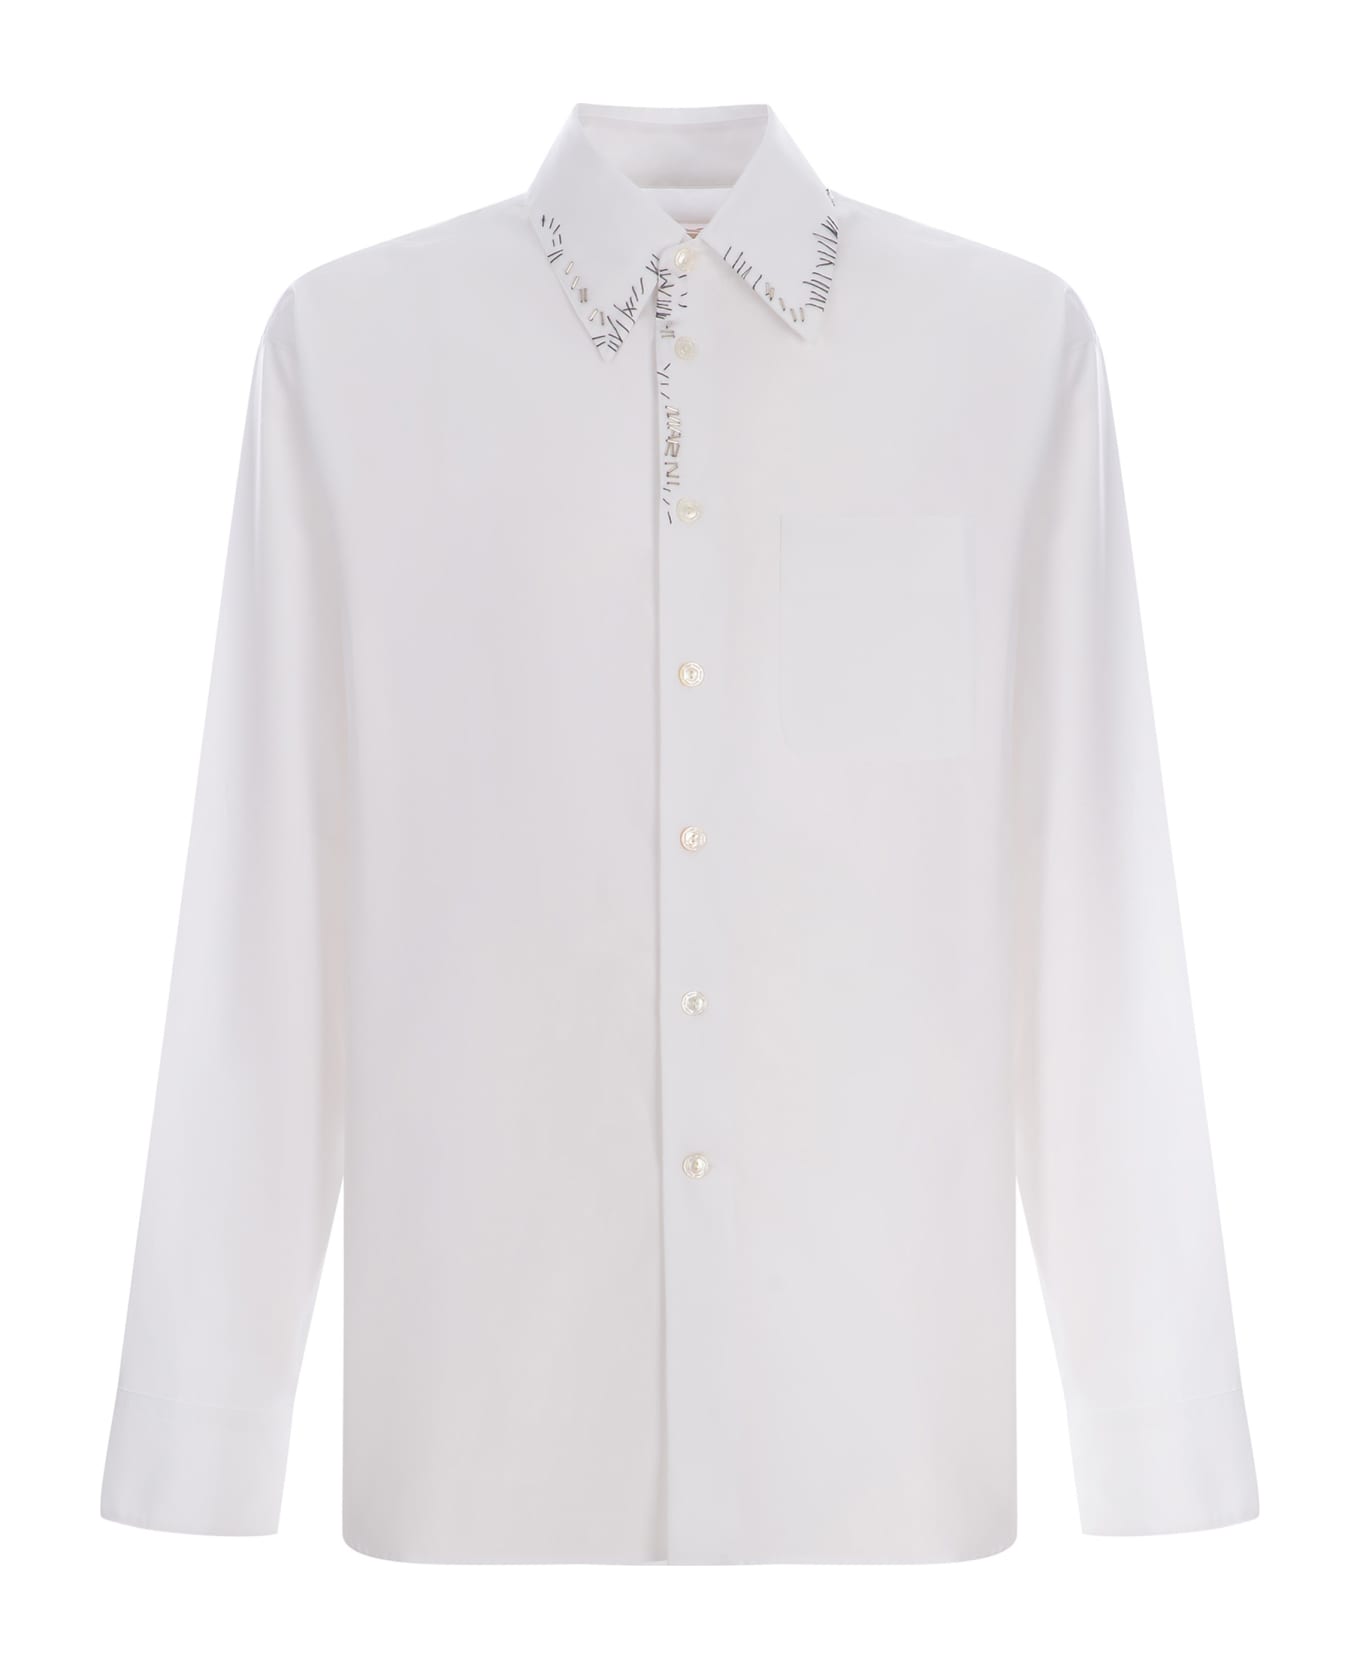 Marni Shirt Marni Made Of Cotton Poplin - Bianco シャツ